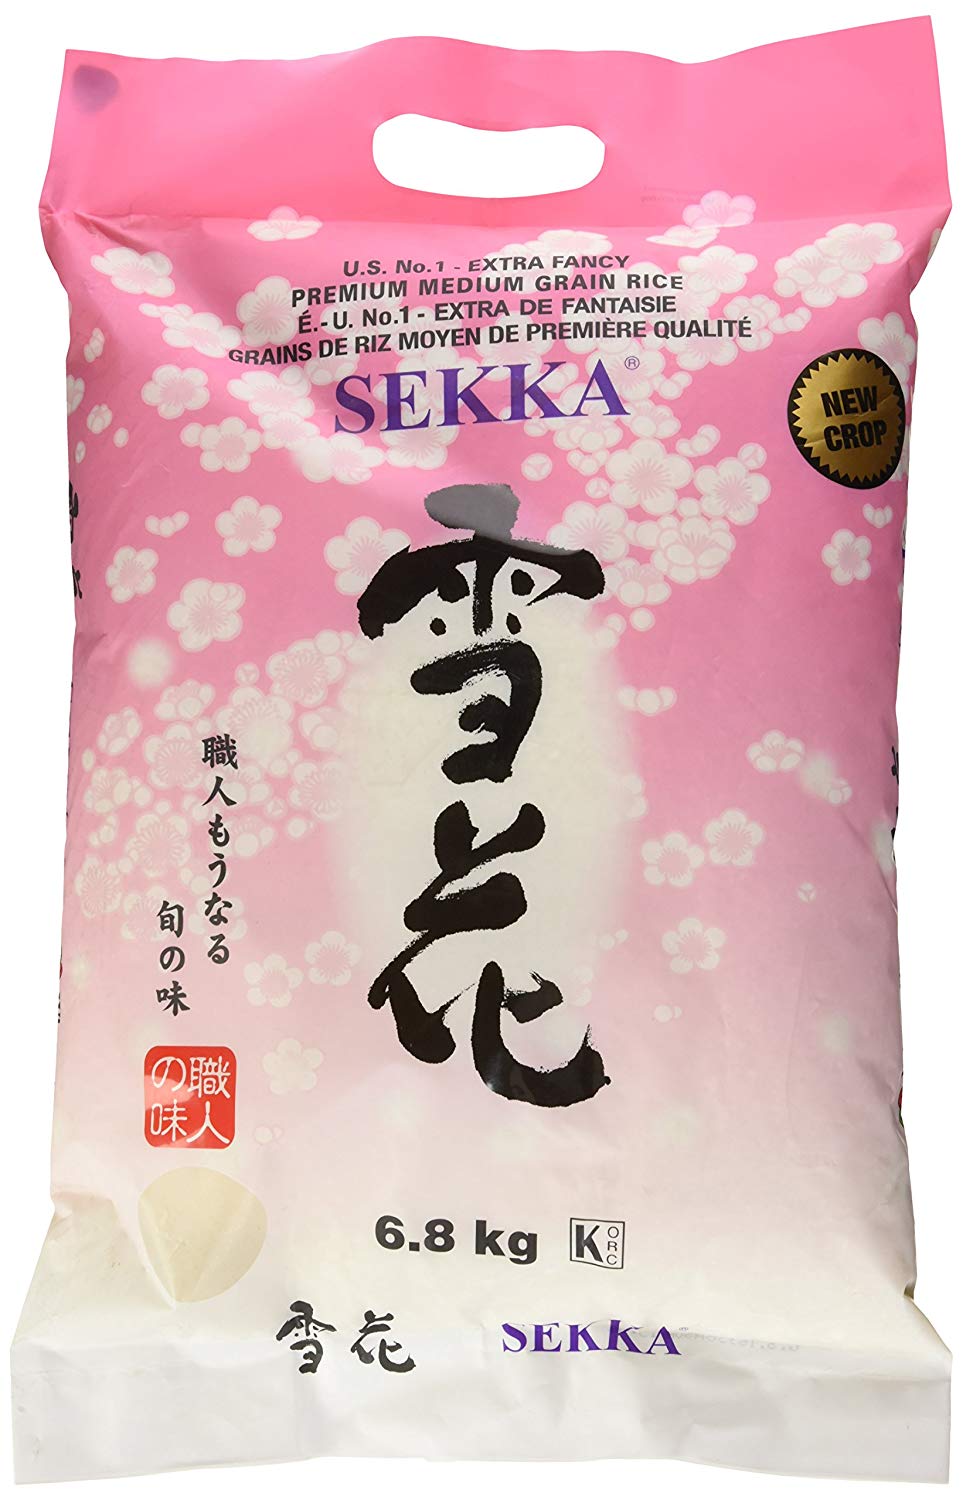 SEKKA 特级中粒白米 - 日本优质未煮熟大米 | 精米，香甜耐嚼 | 低脂肪，适合正宗亚洲美食，15 磅